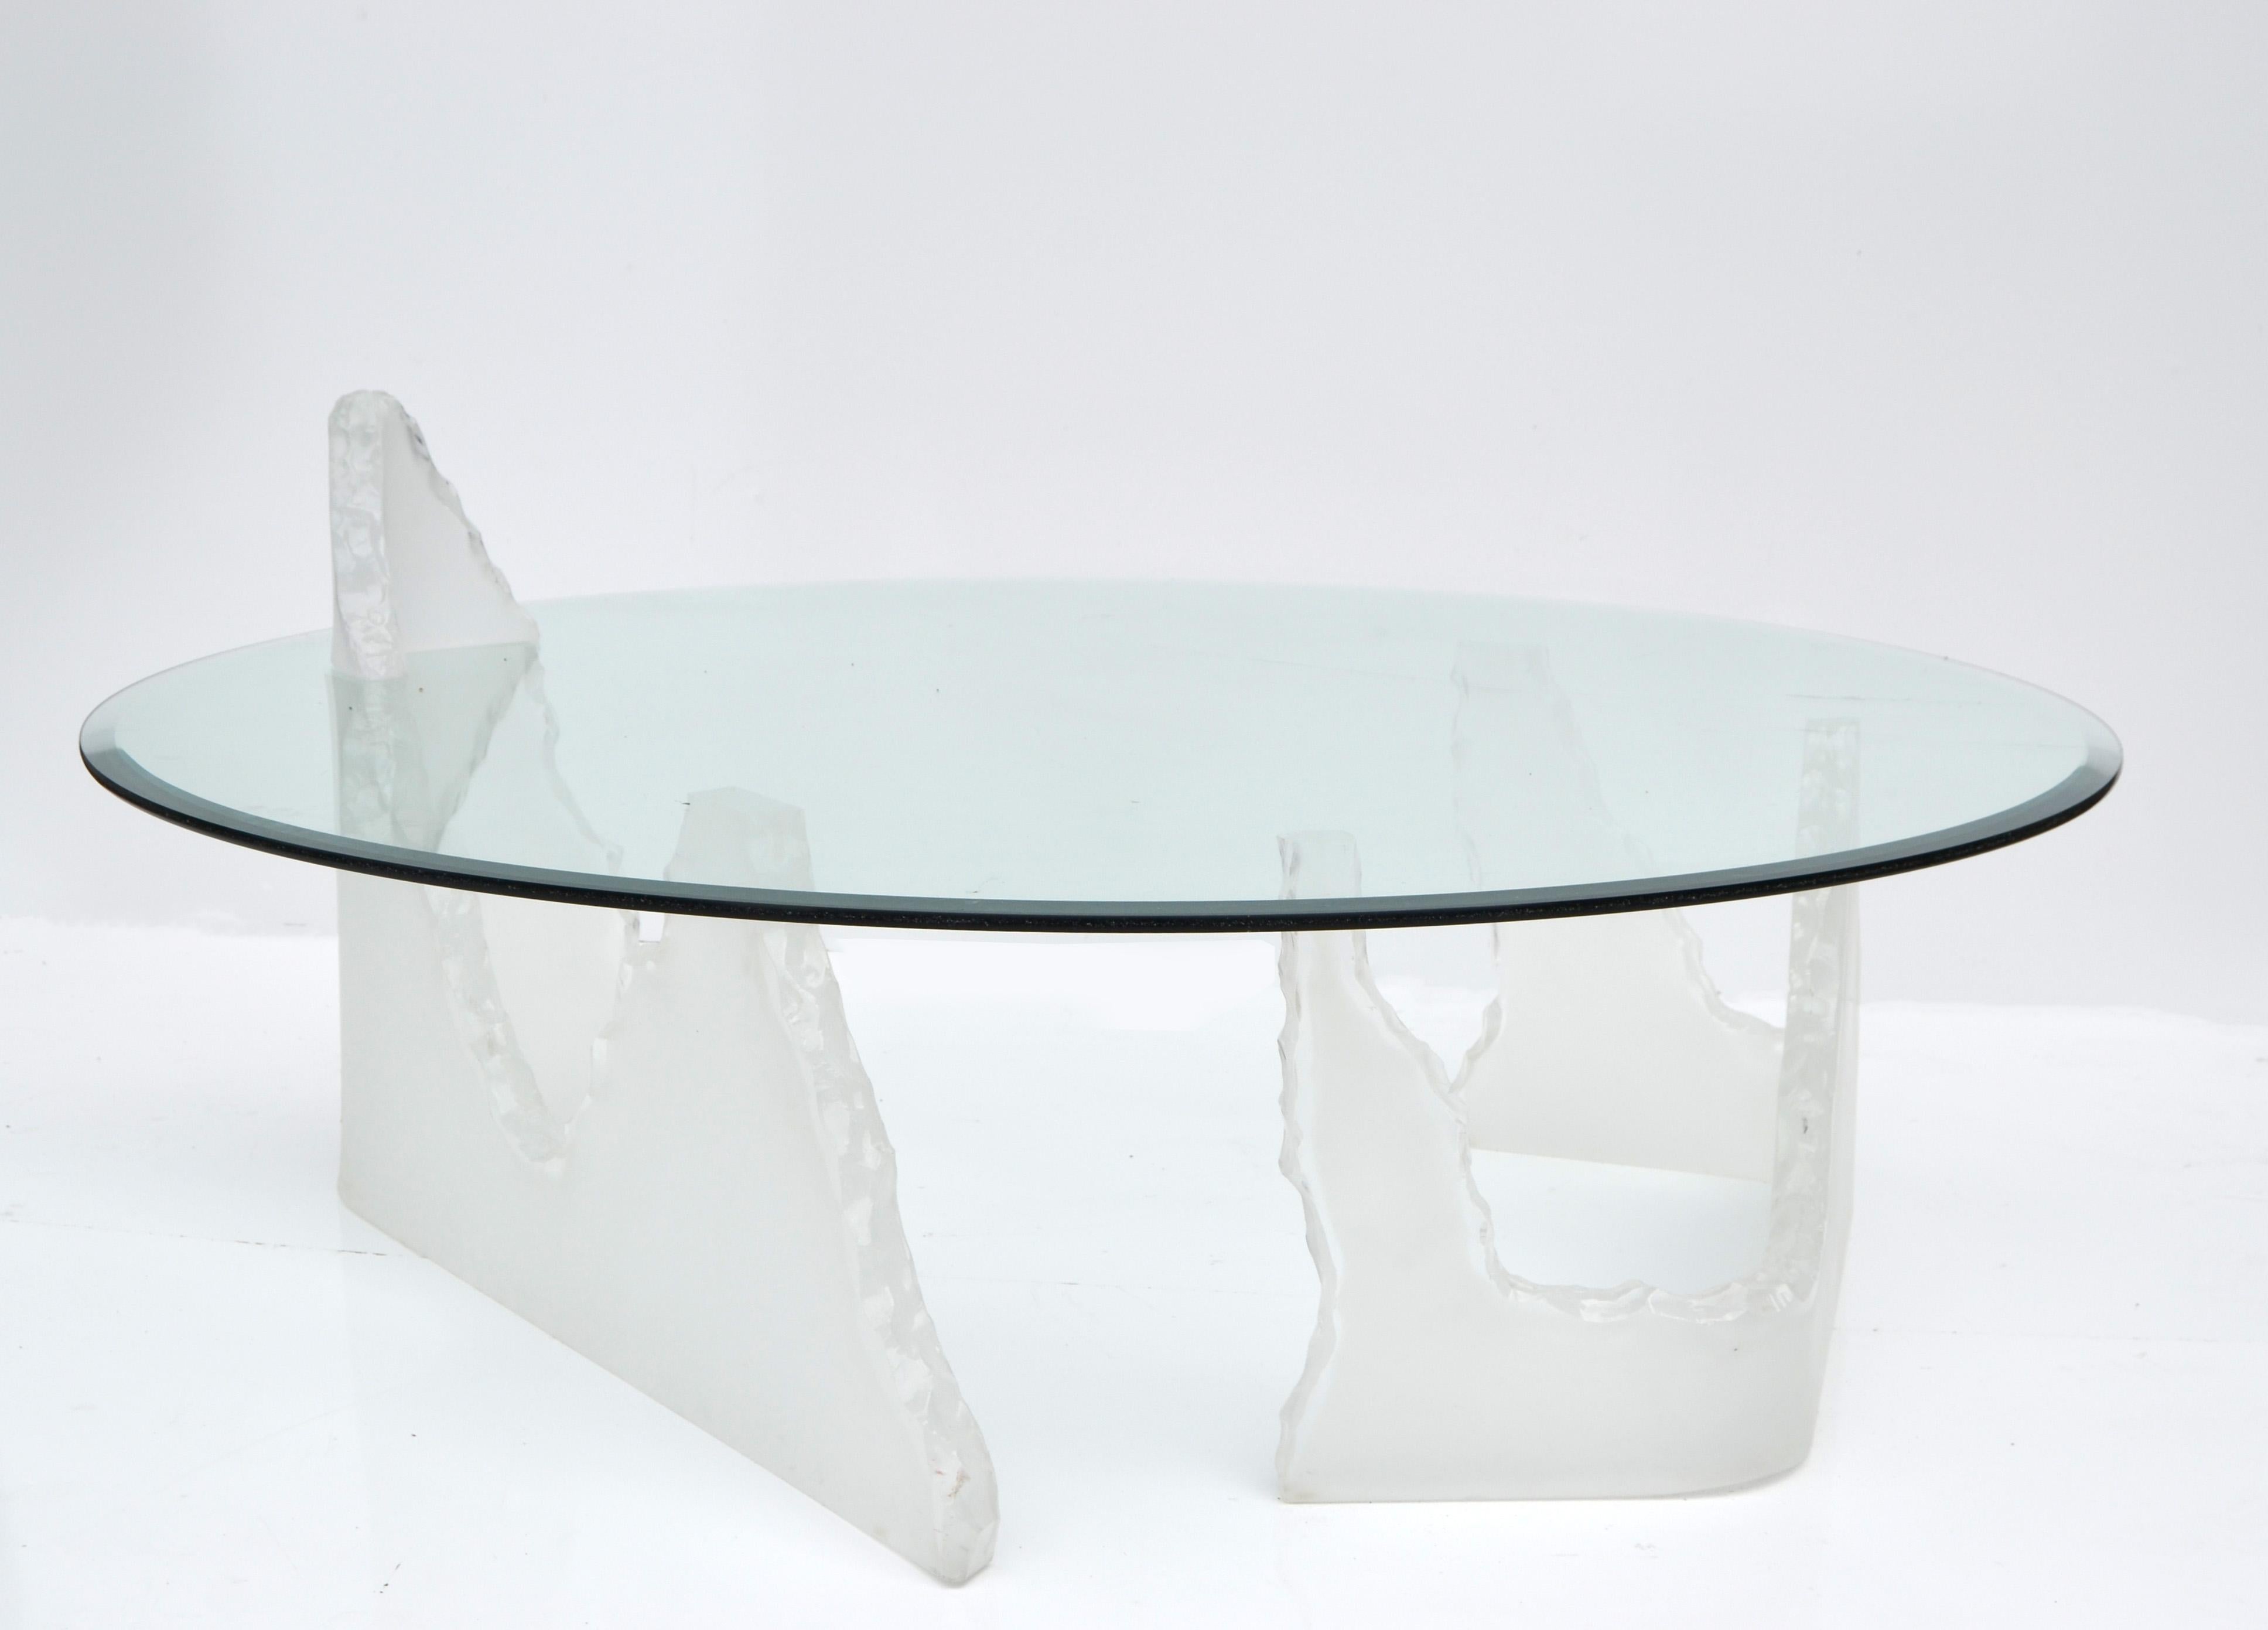 polar bear glass table